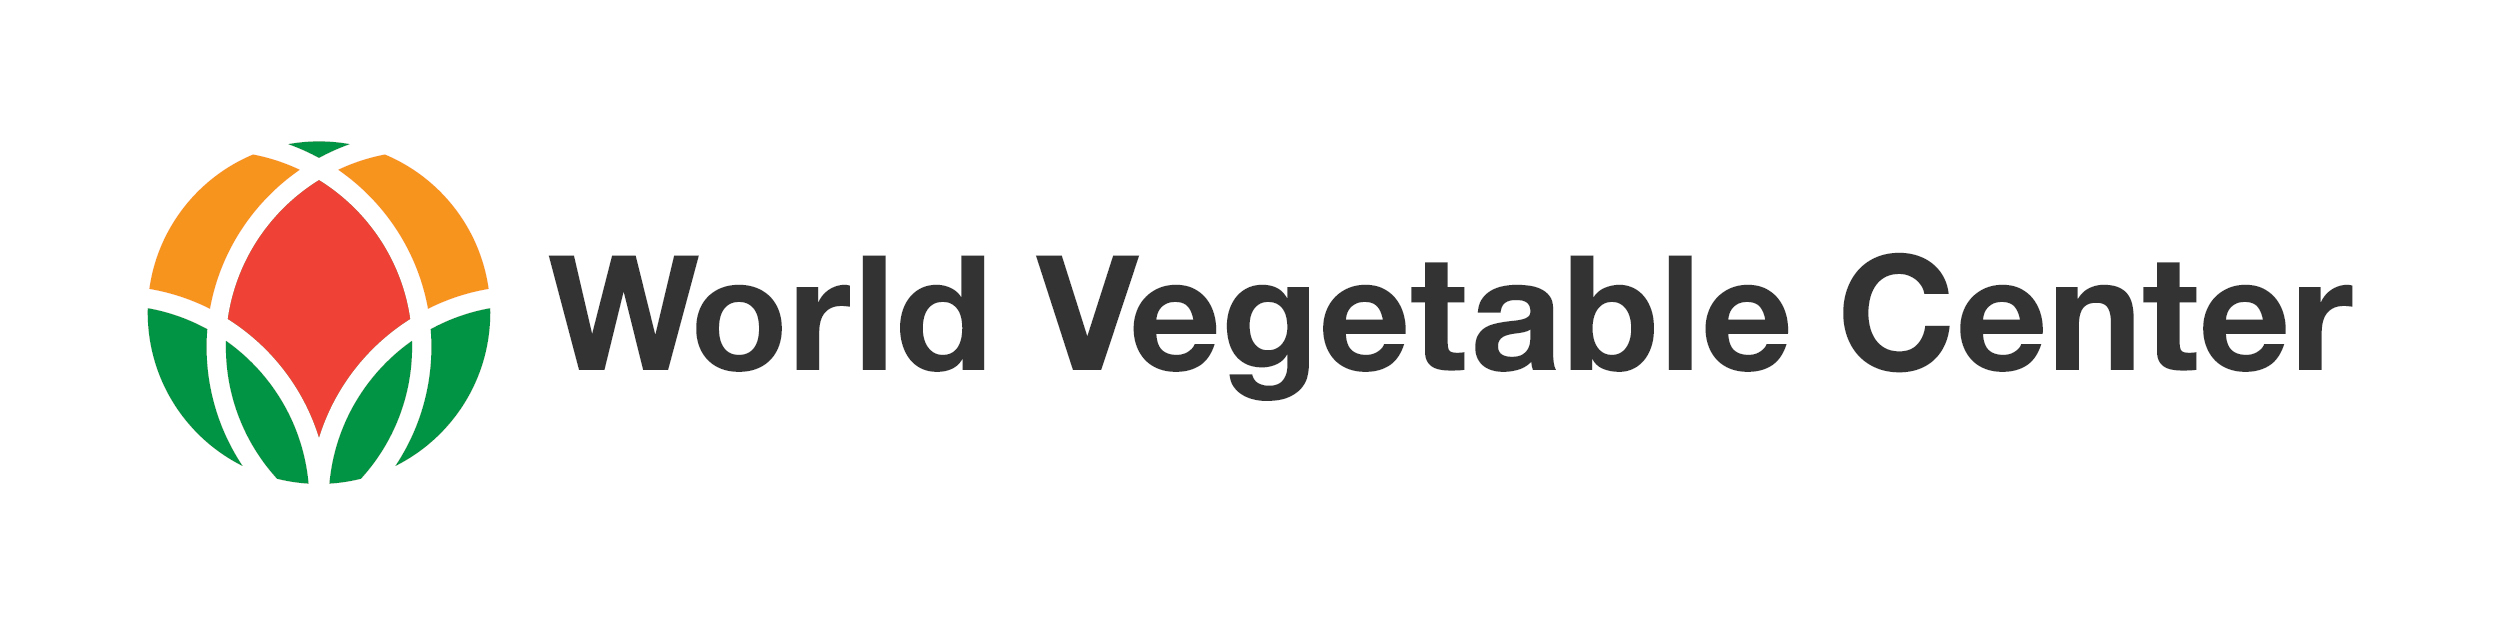 World Vegetable Center - logo